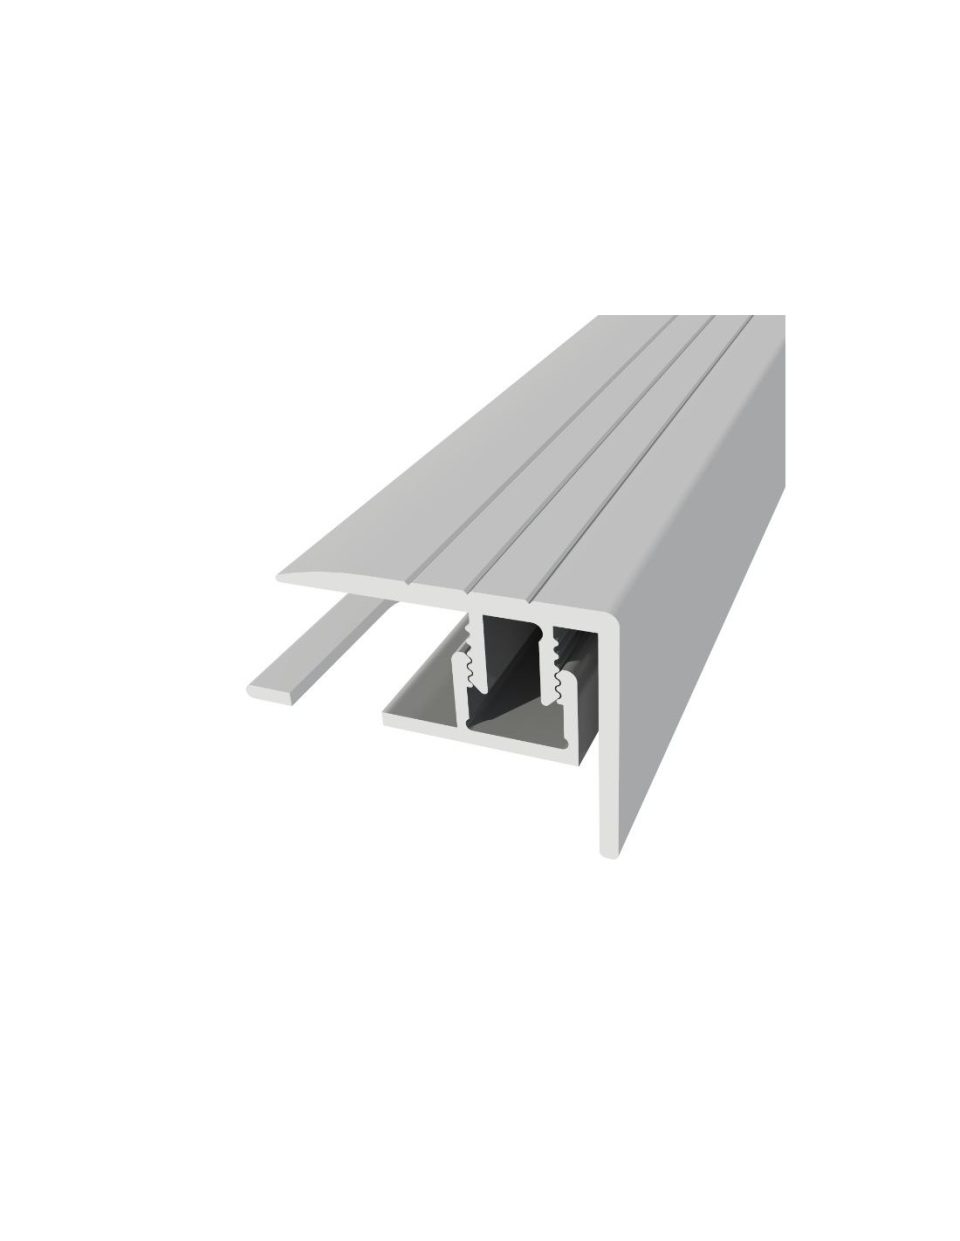 PERFIL R 55 - ​Escadaria de alumínio de 25x20 mm com base de 5-9 mm Sistema Multifix DIM: 2700 x 25 x 20 mm